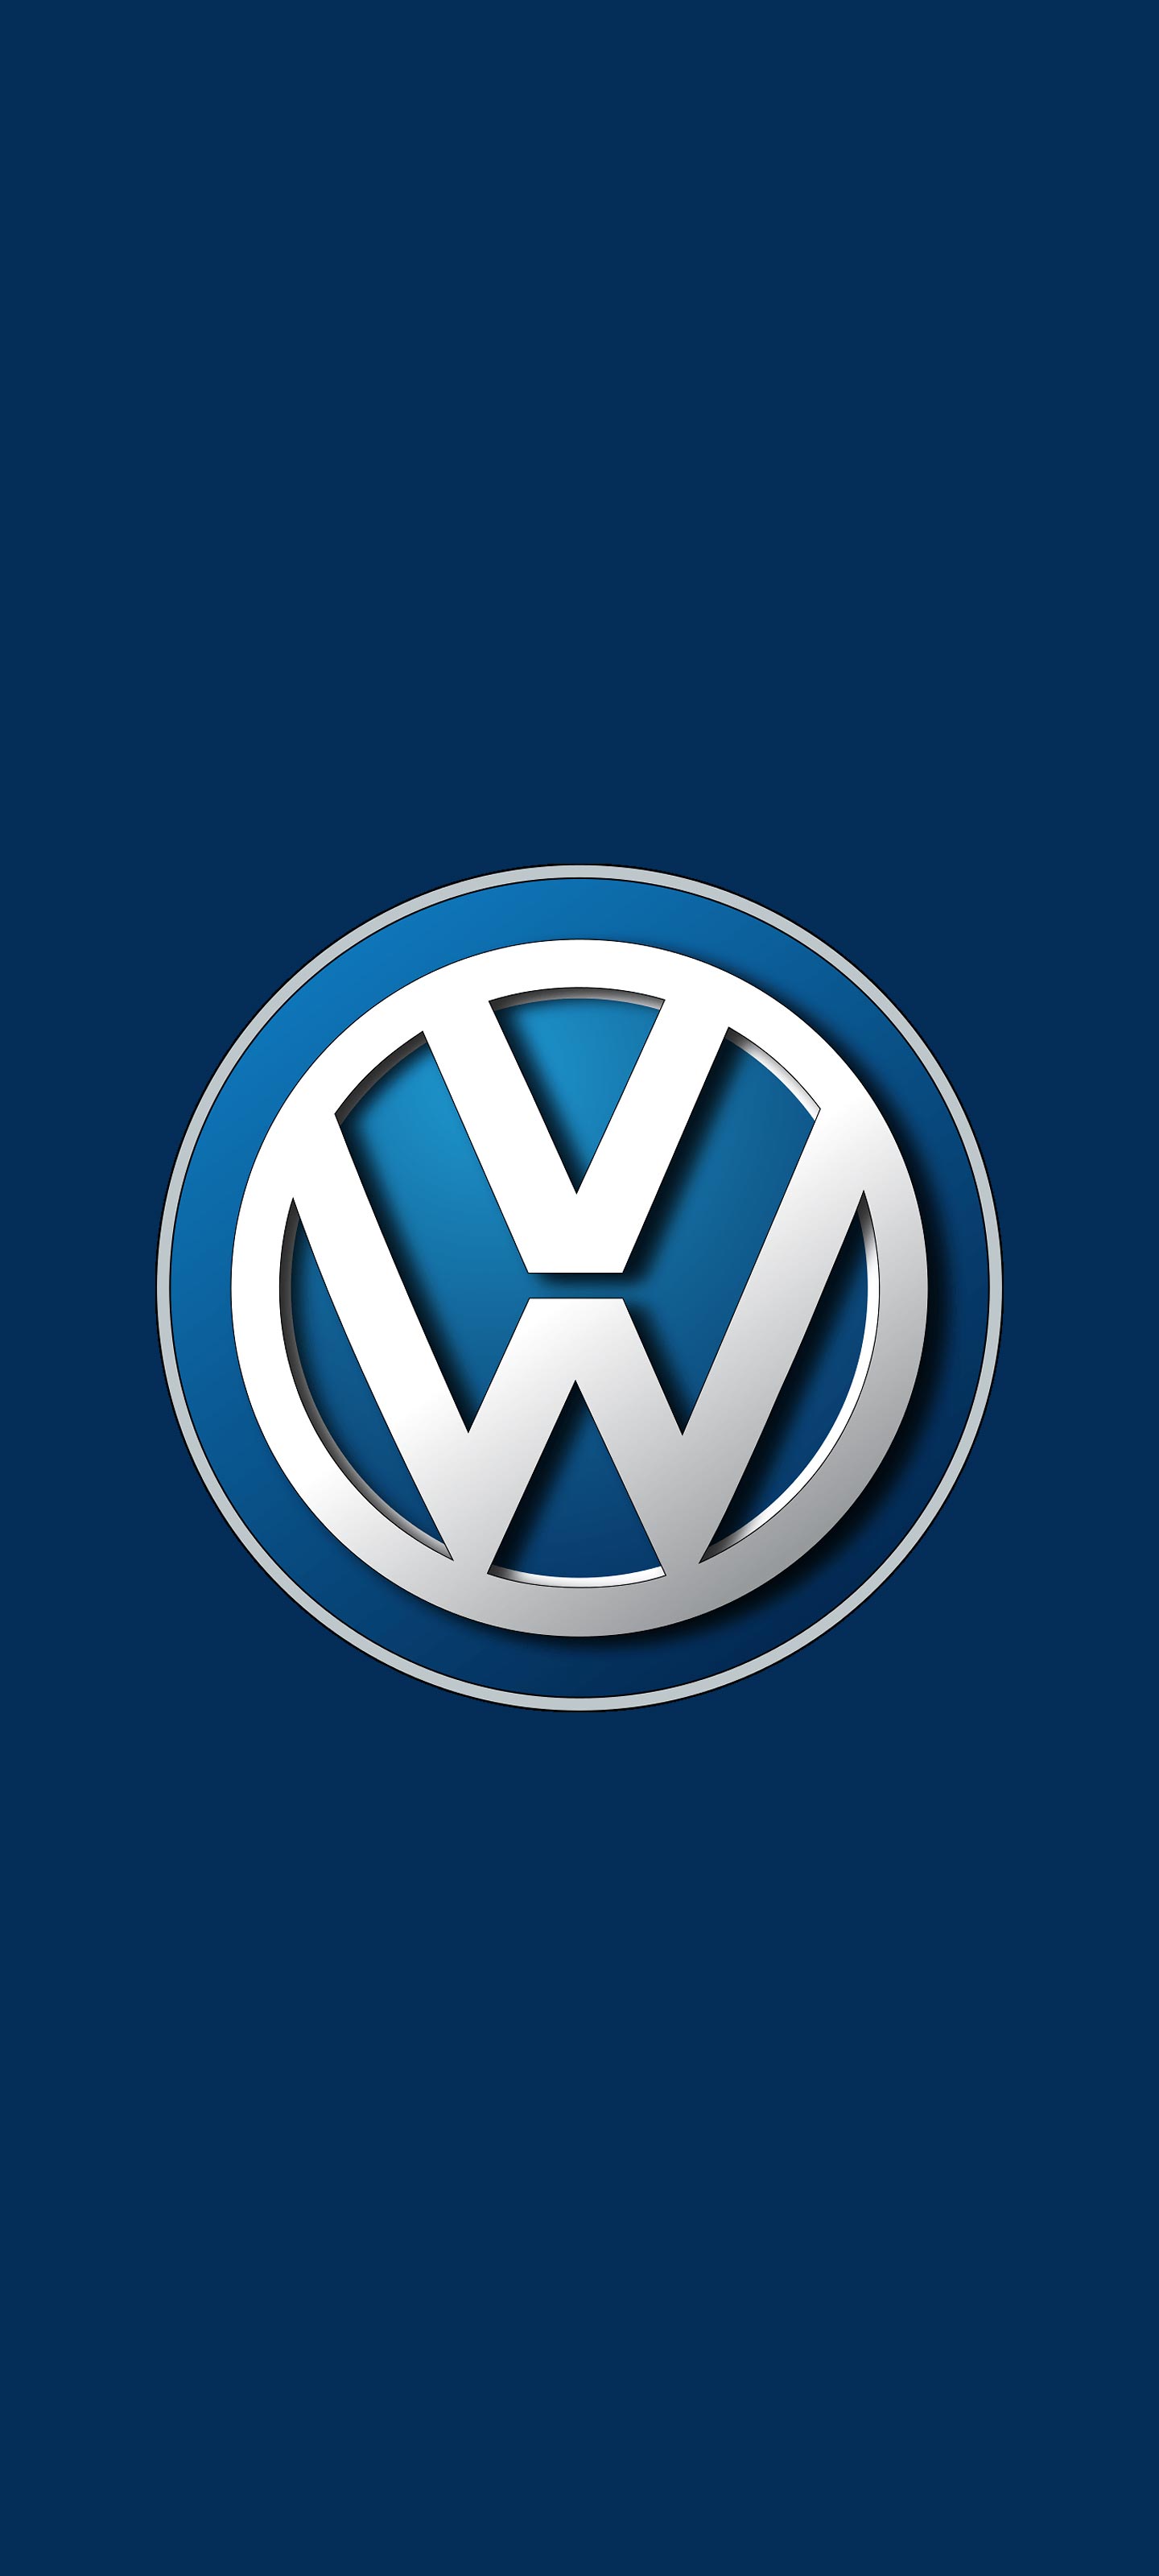 フォルクスワーゲン Volkswagen ロゴ の無料待ち受け画像 スマホ壁紙 Iphone Android 1 待ち受けparadise